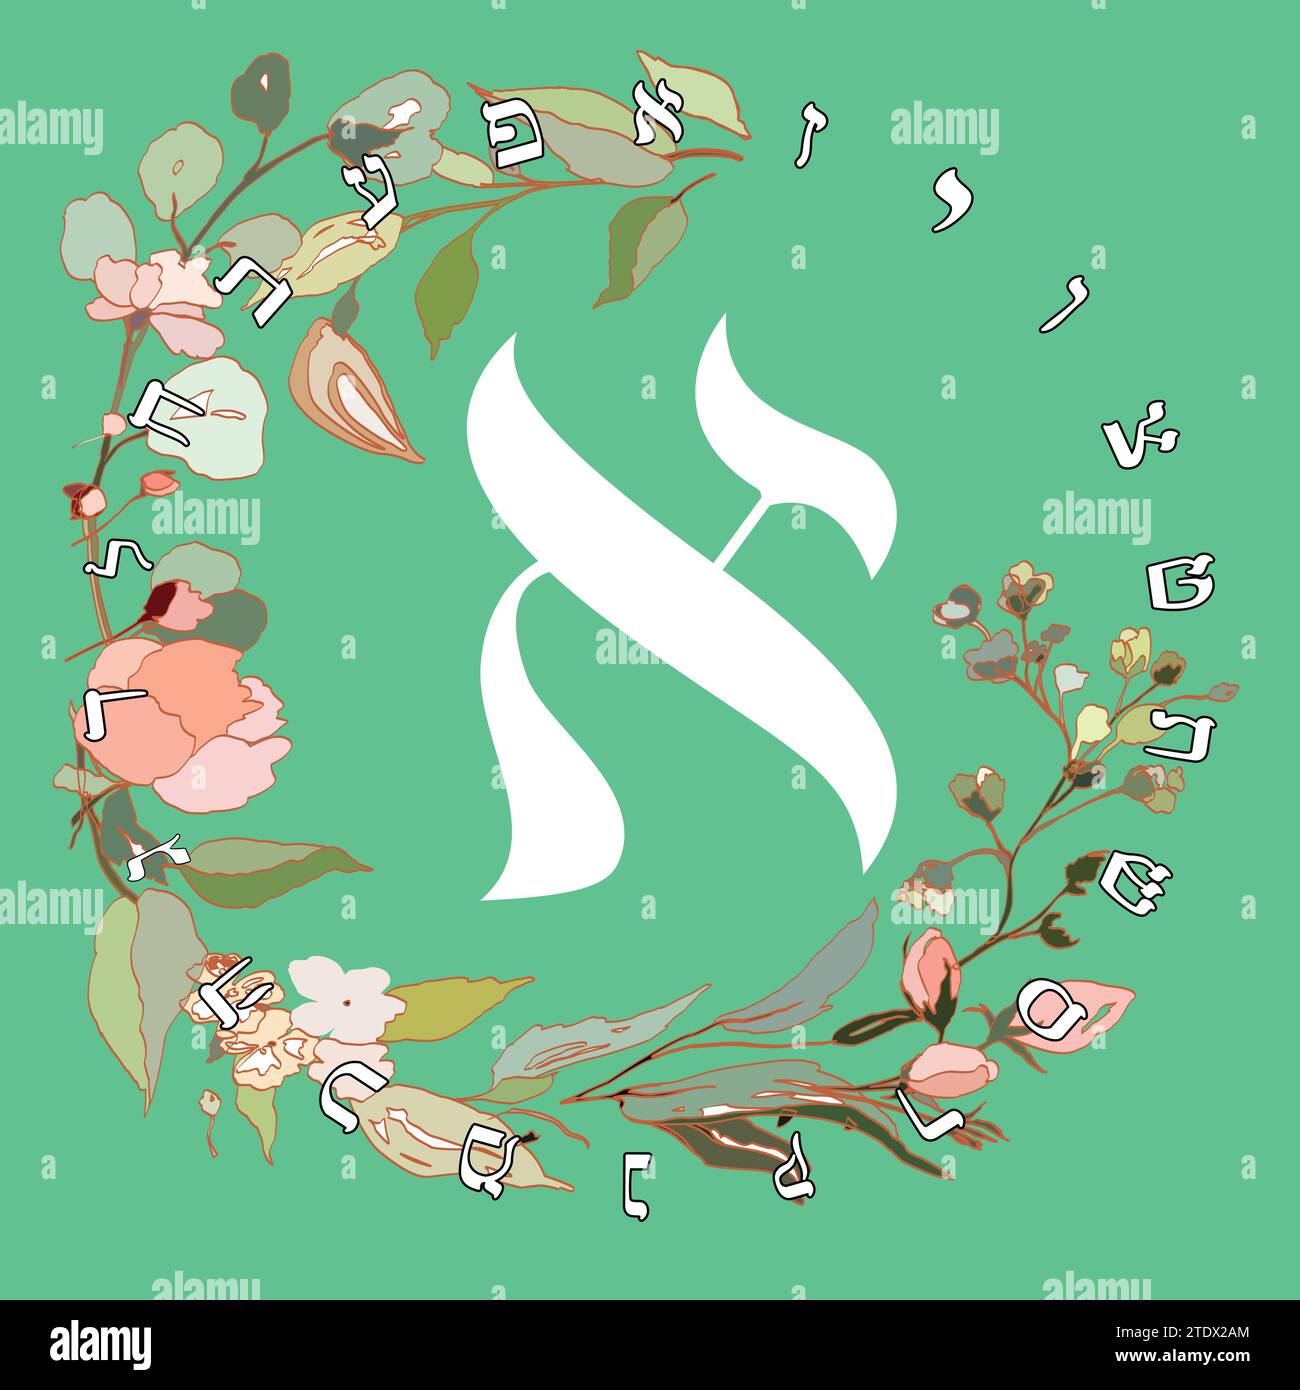 Illustrazione vettoriale dell'alfabeto ebraico con disegno floreale. Lettera ebraica chiamata Aleph bianca su sfondo verde. Illustrazione Vettoriale